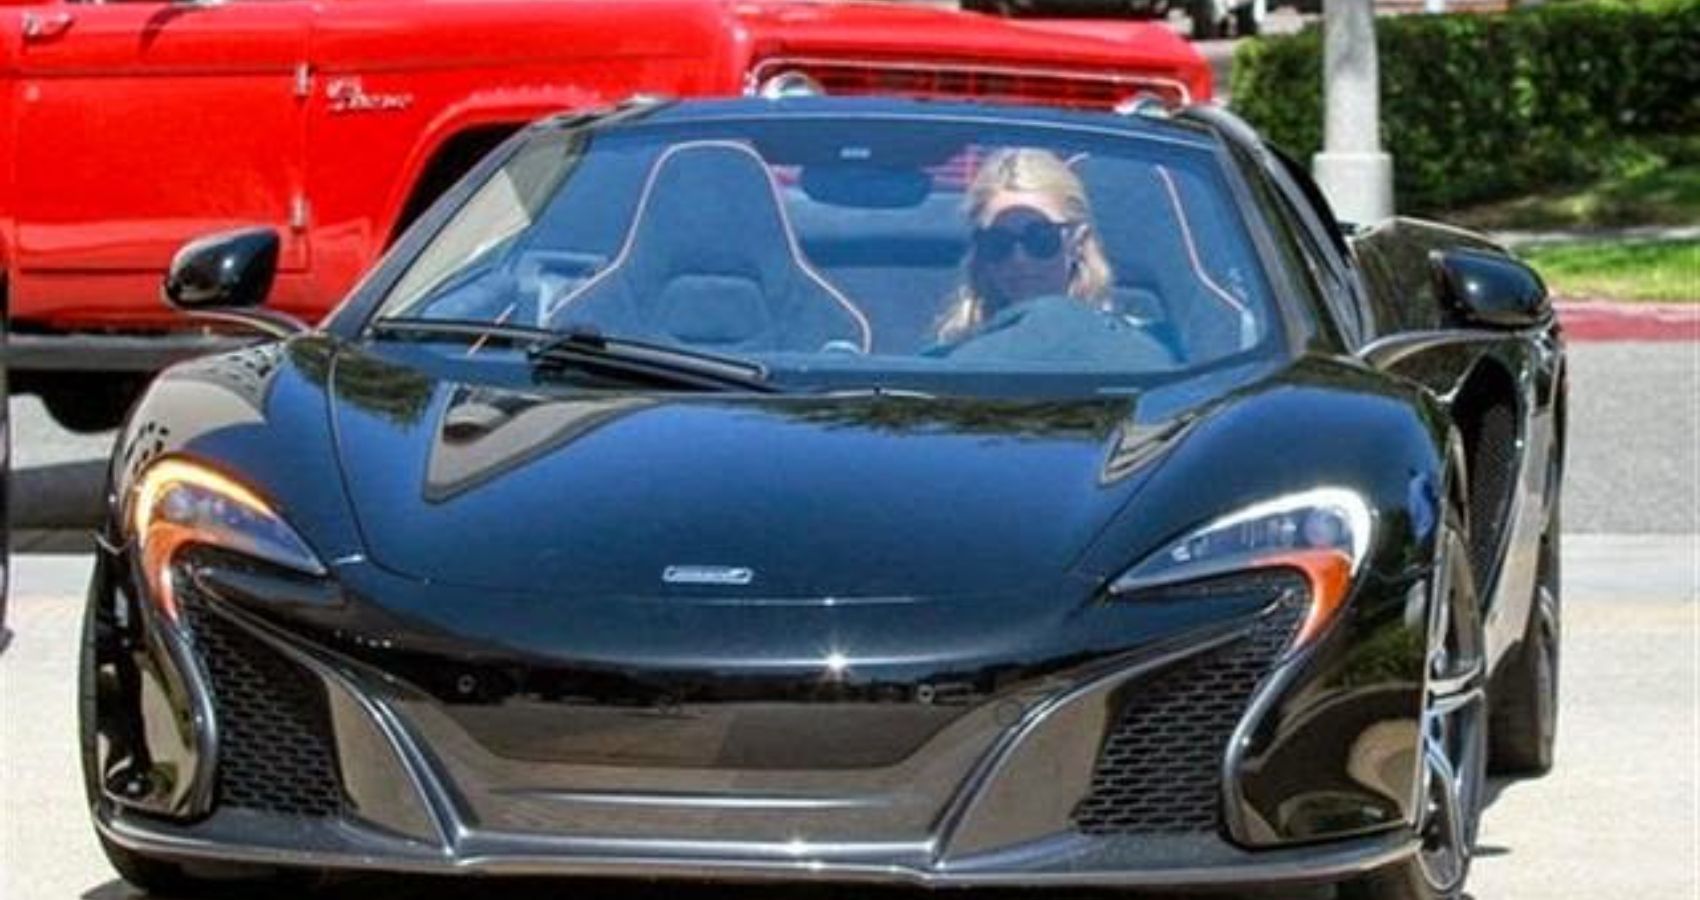 Paris Hilton Buys a Black McLaren 650S Spider